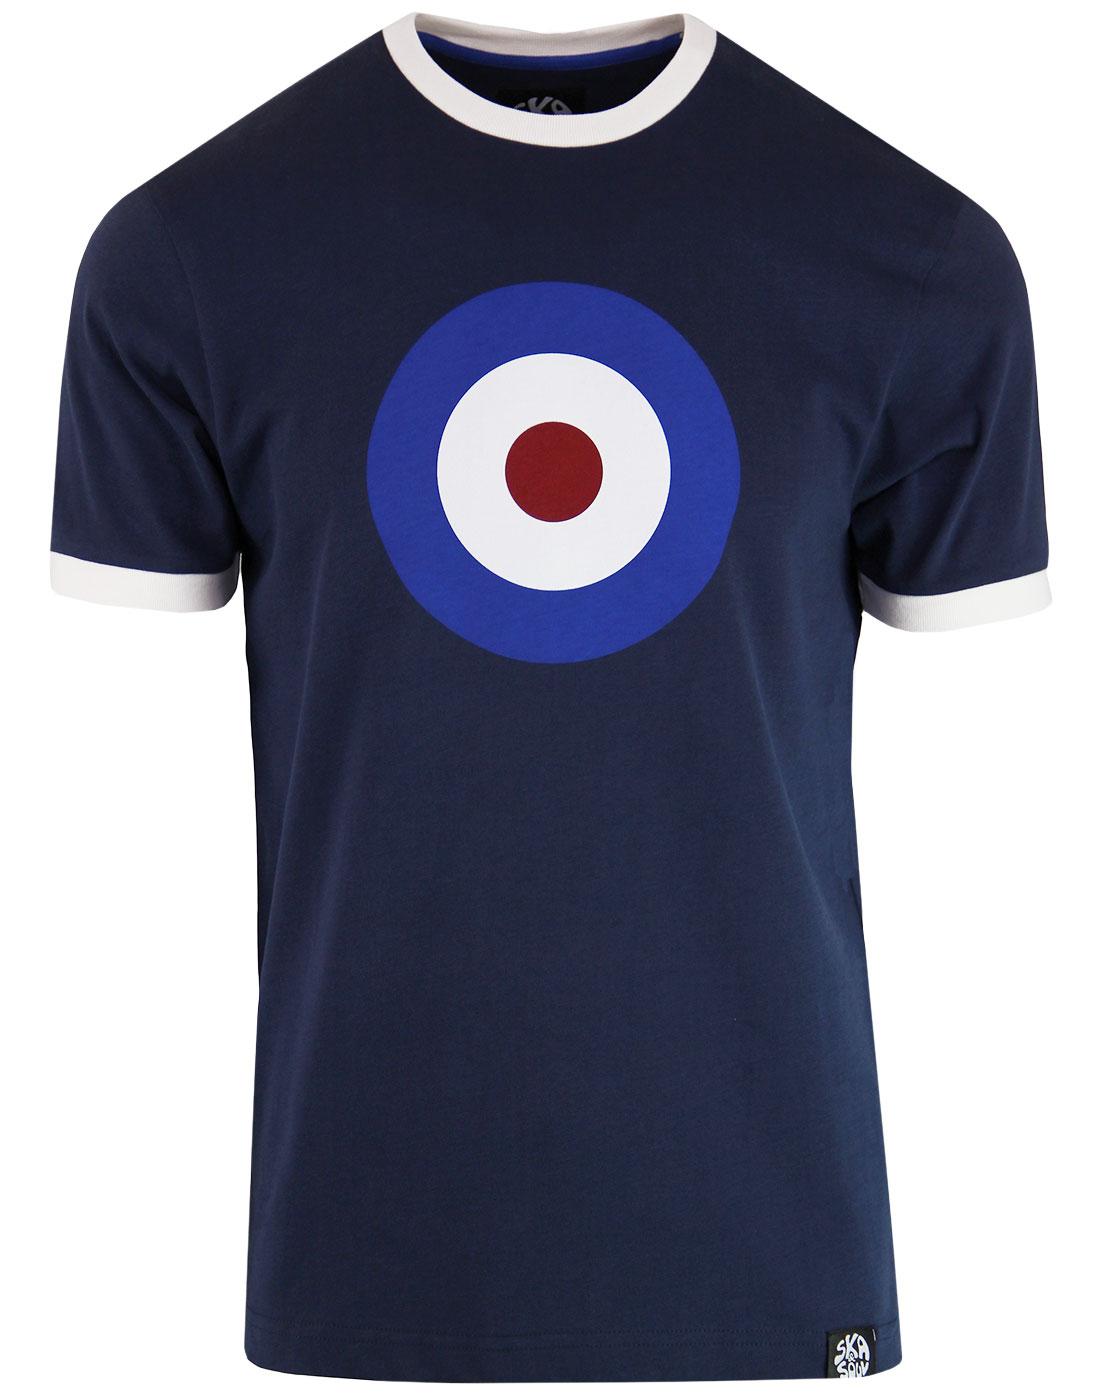 SKA & SOUL Men's 1960s Mod Target Ringer T-shirt N